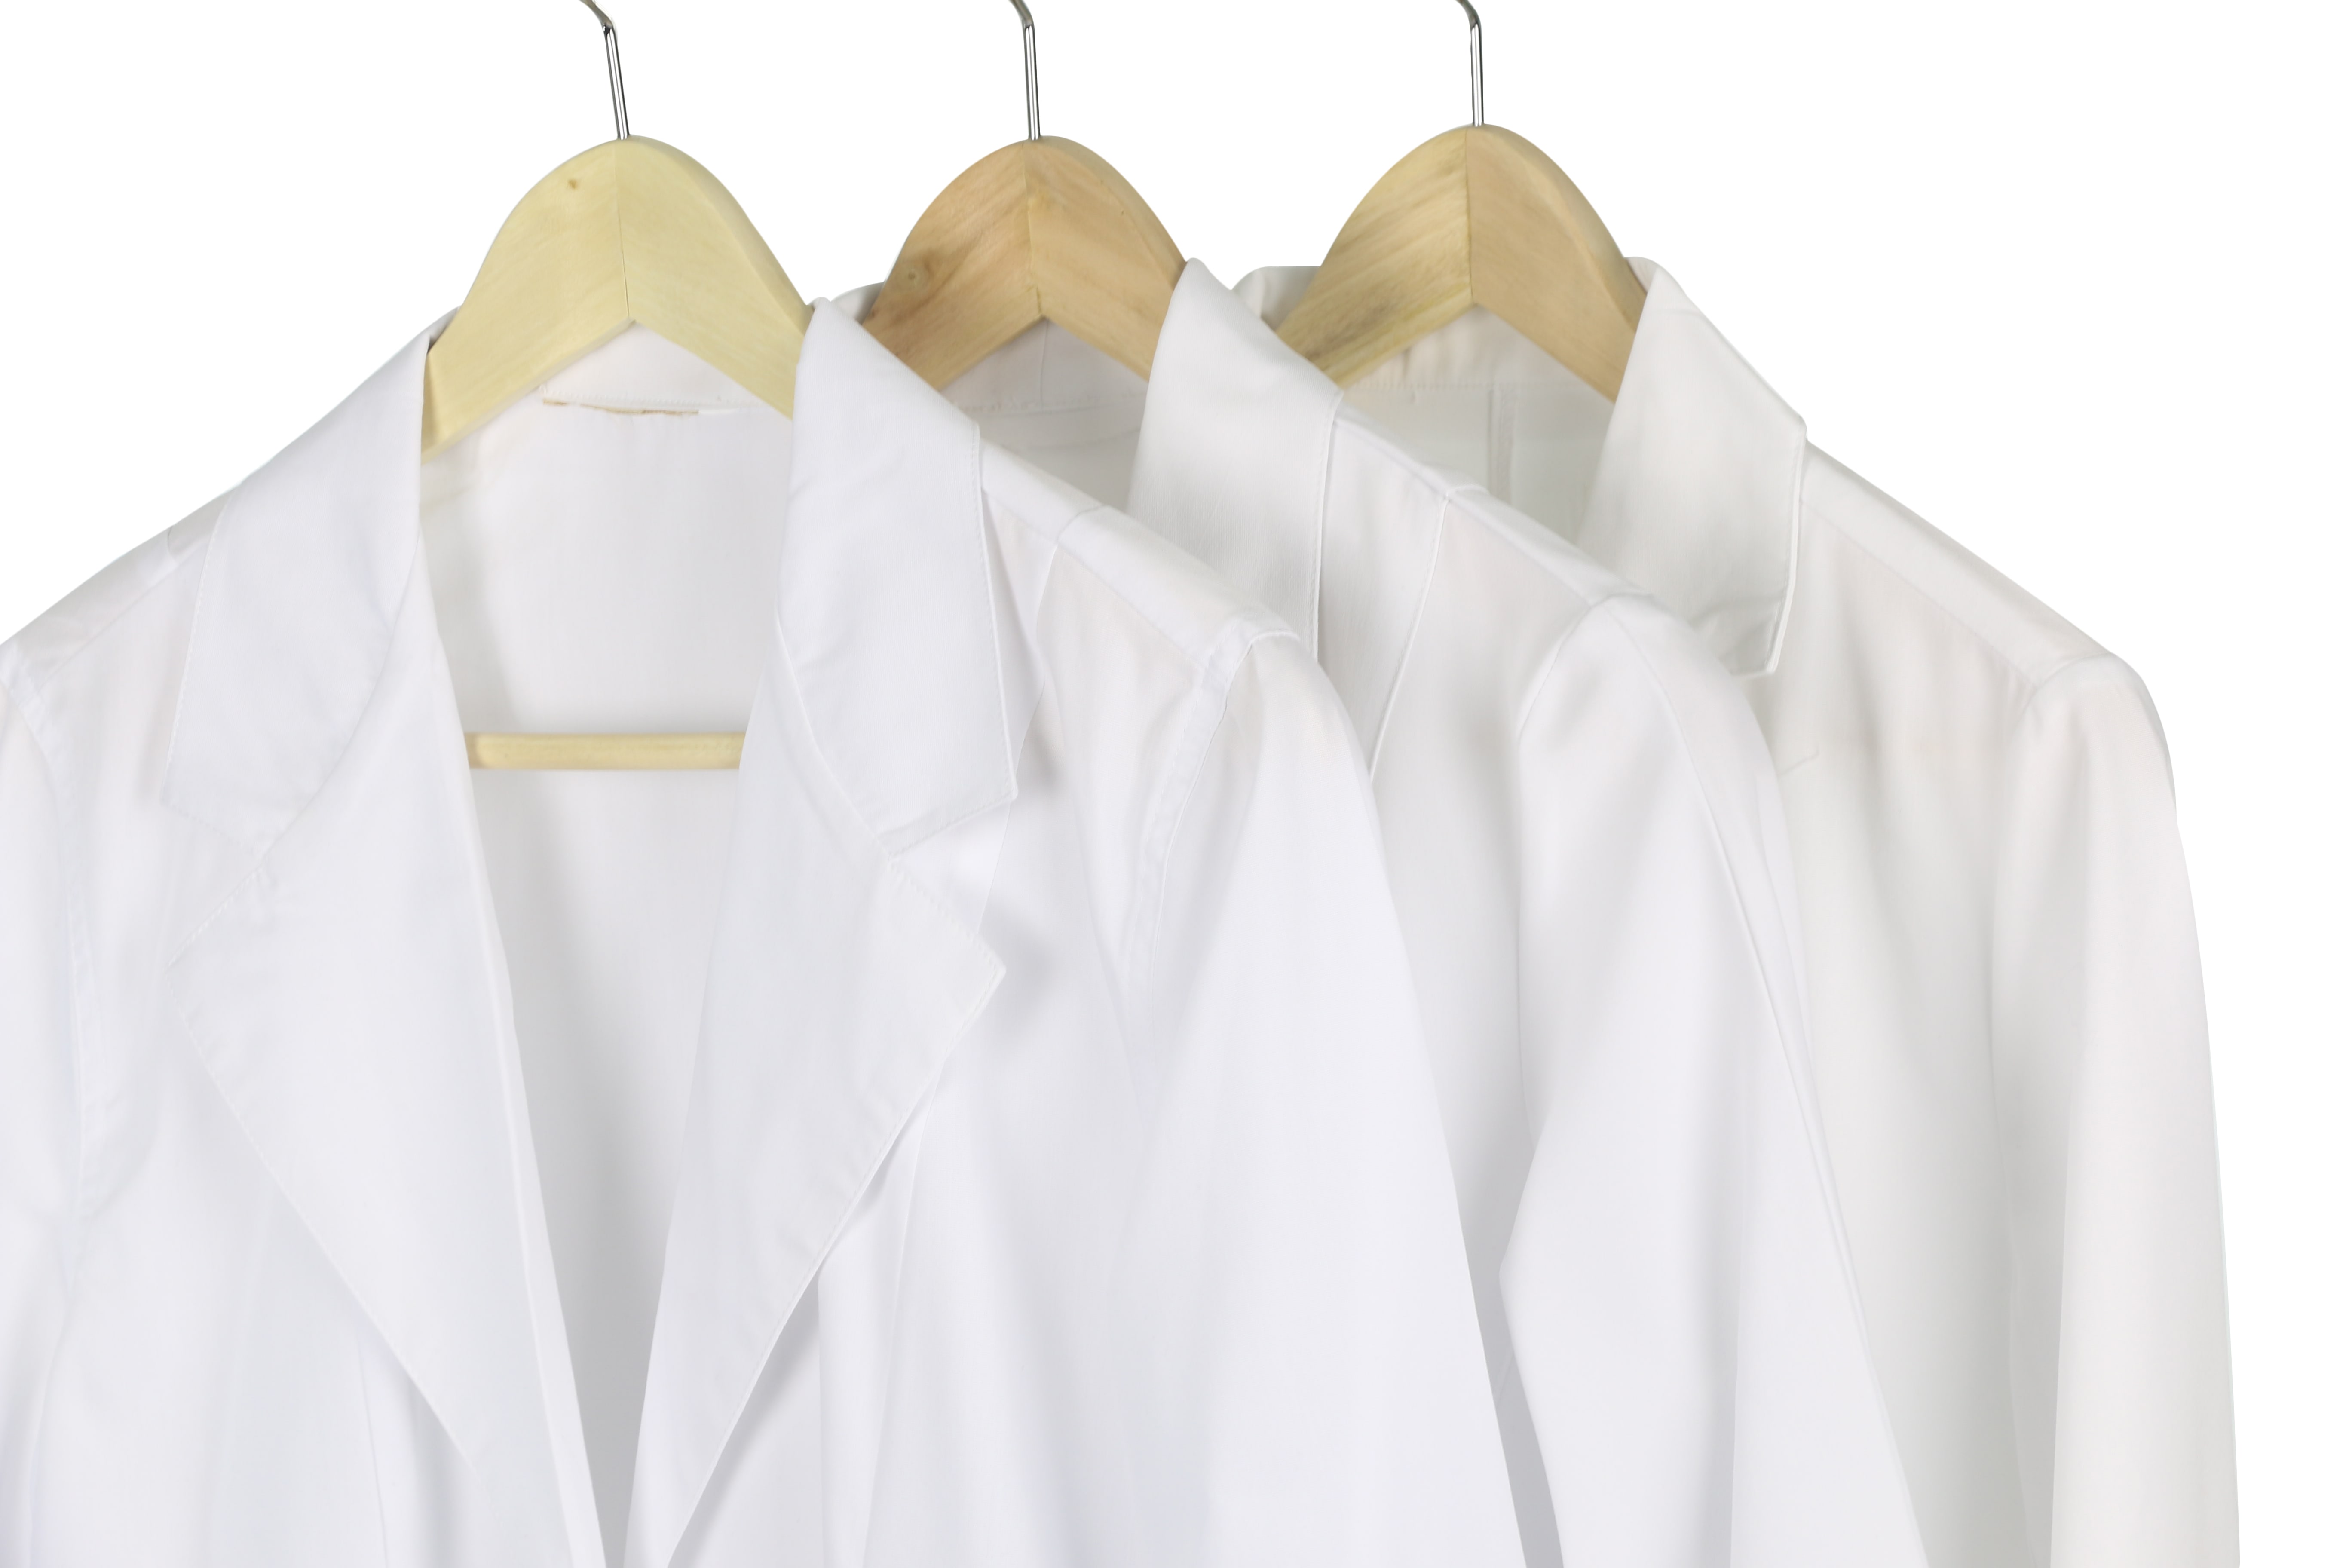 brand-name scrubs, lab coats